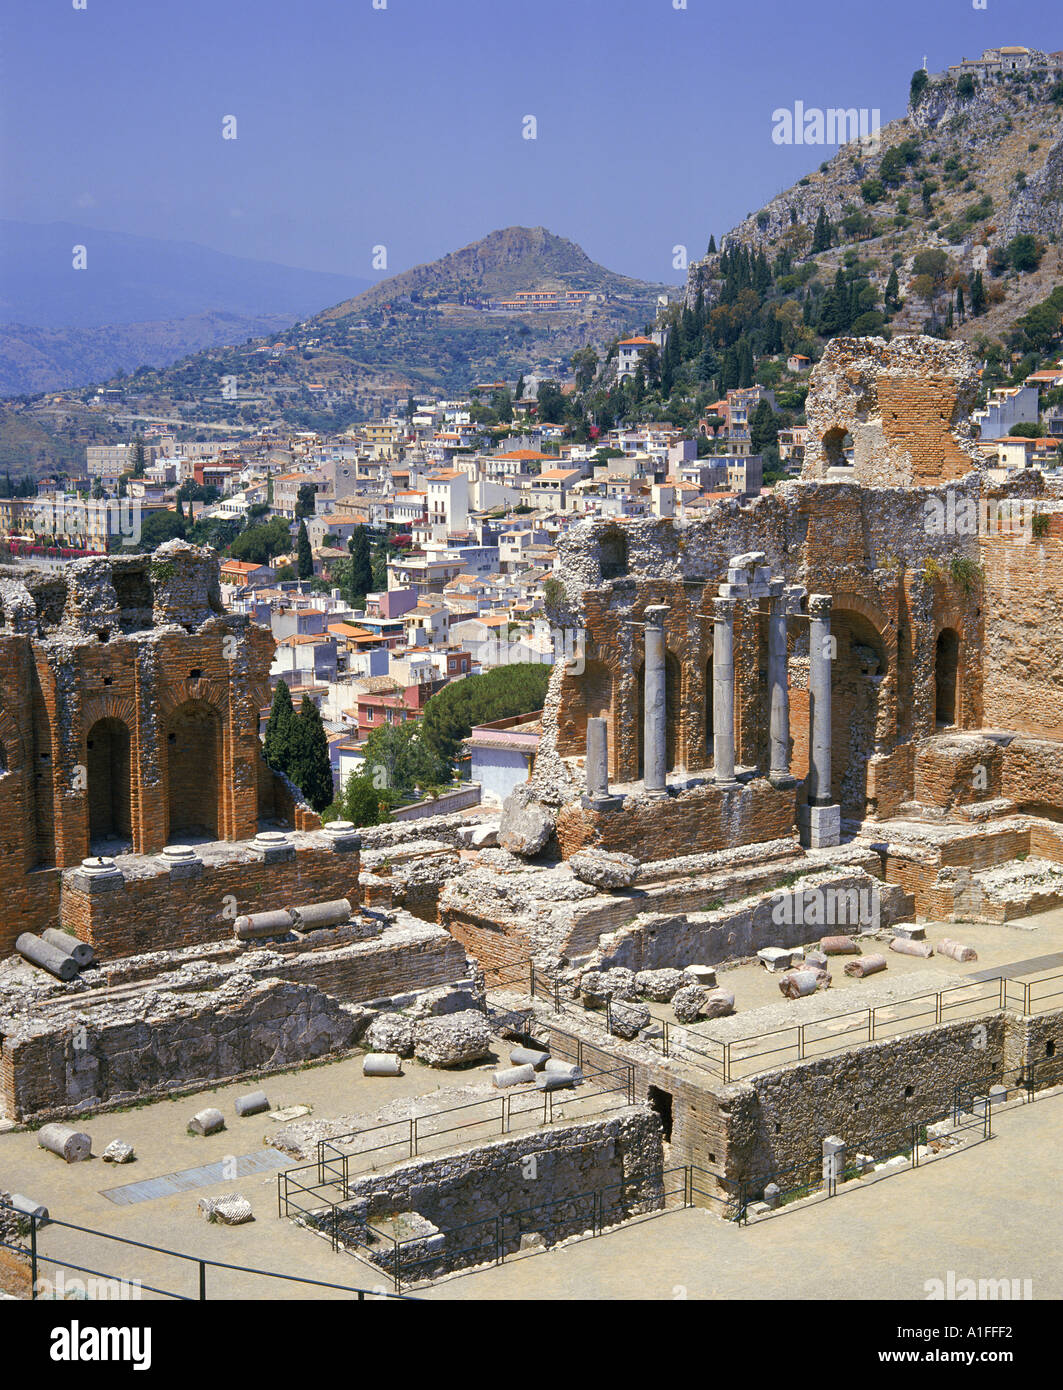 Les ruines du théâtre romain, grec et la ville en arrière plan à Taormina en Sicile Italie G Hellier Banque D'Images